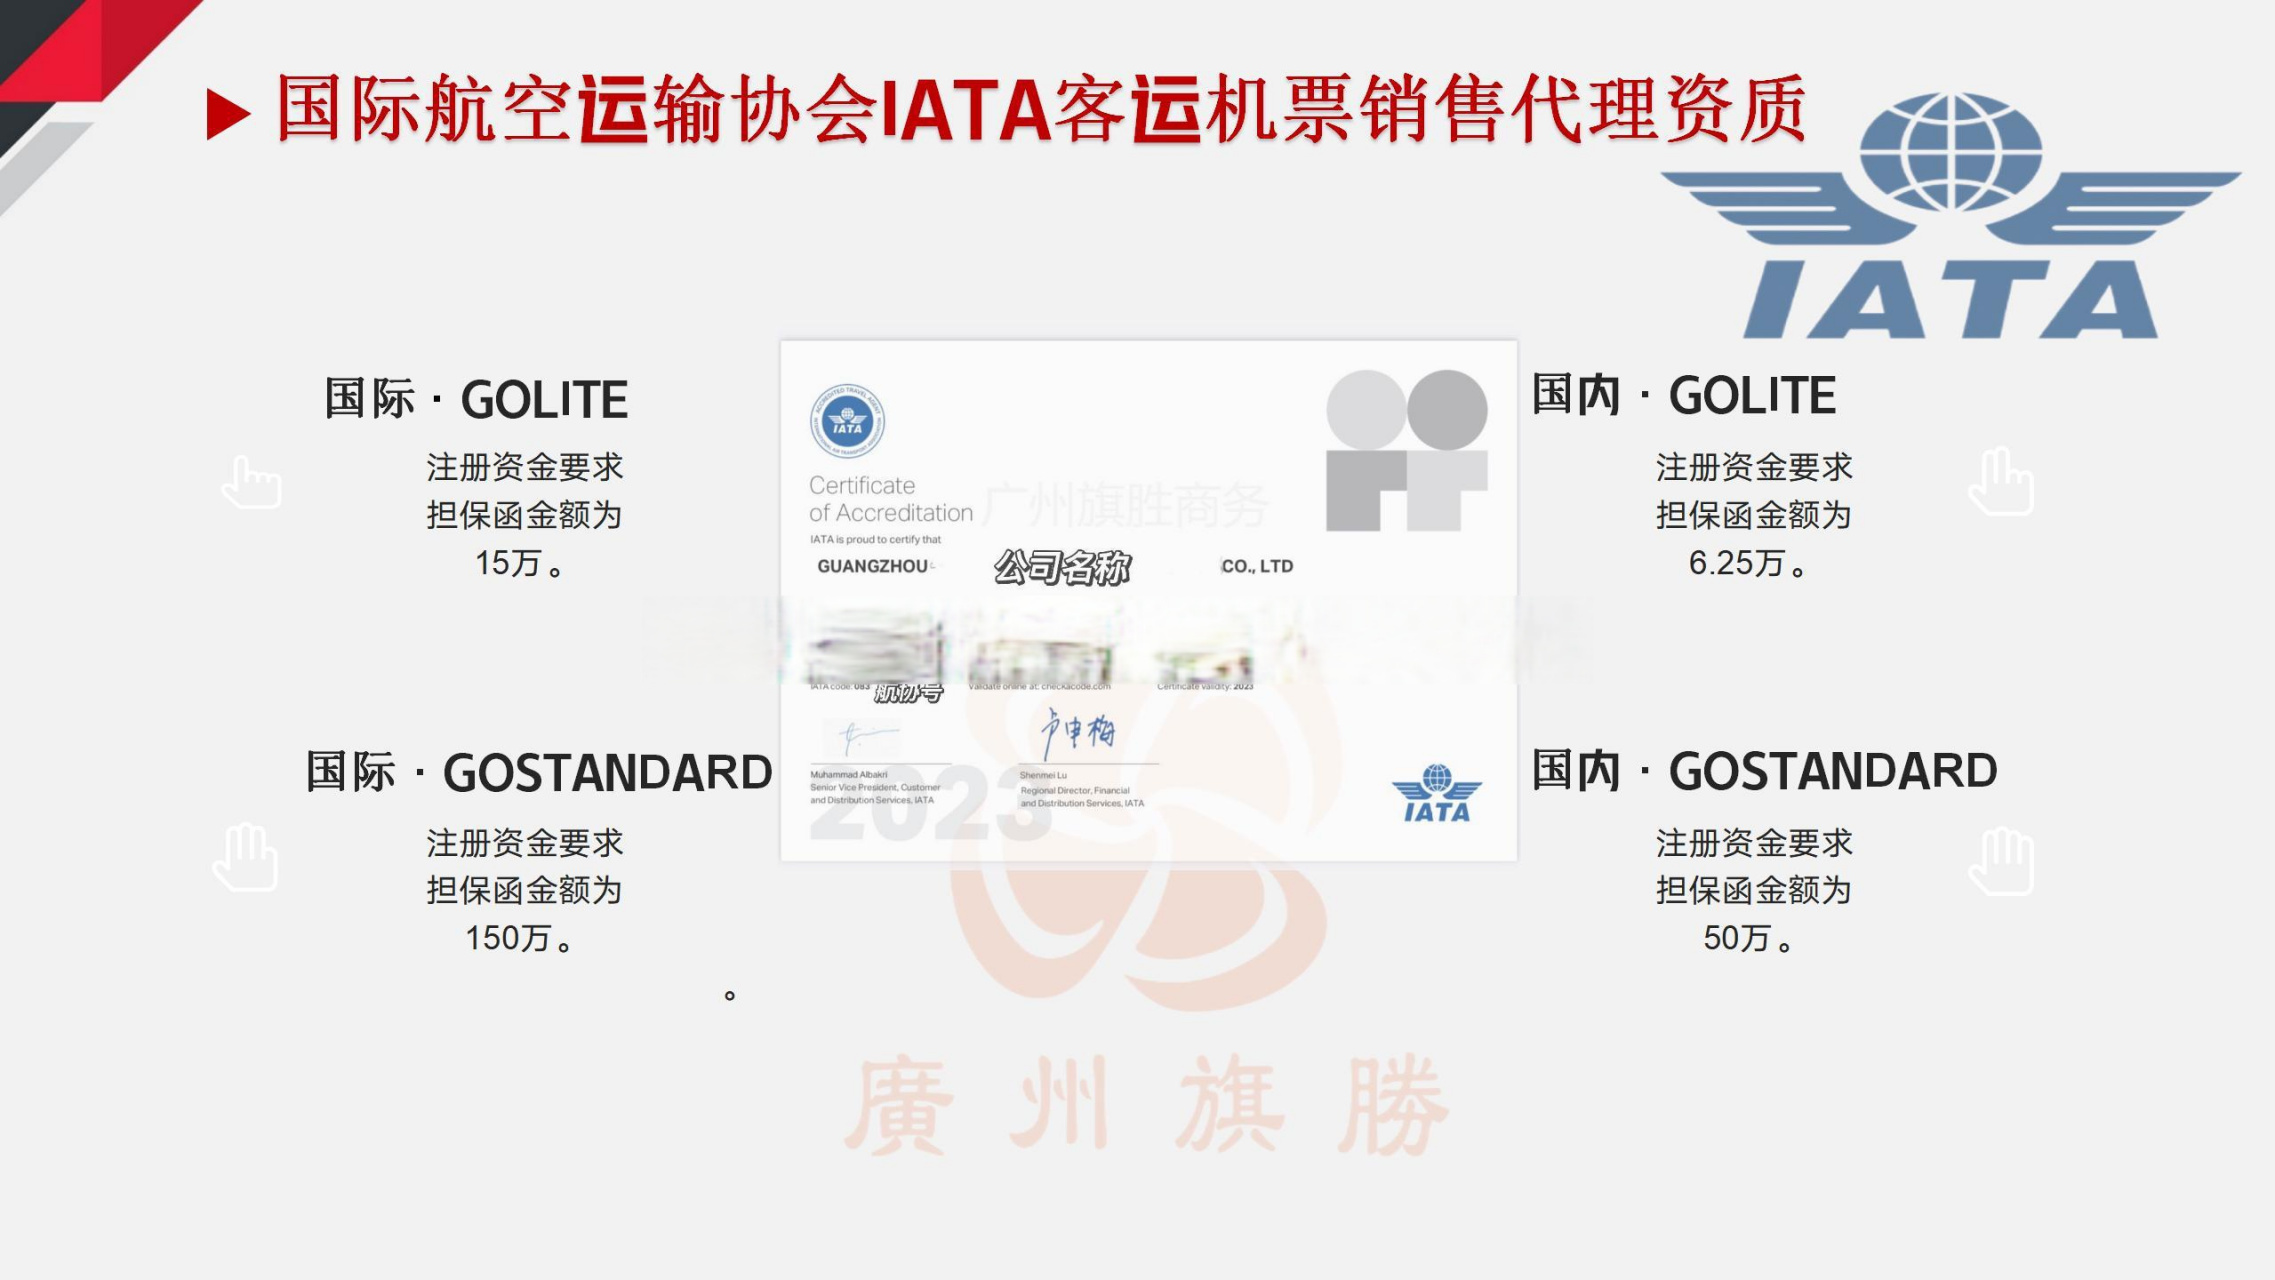 简单介绍 iata客运 机票销售代理资质 iata货运 .